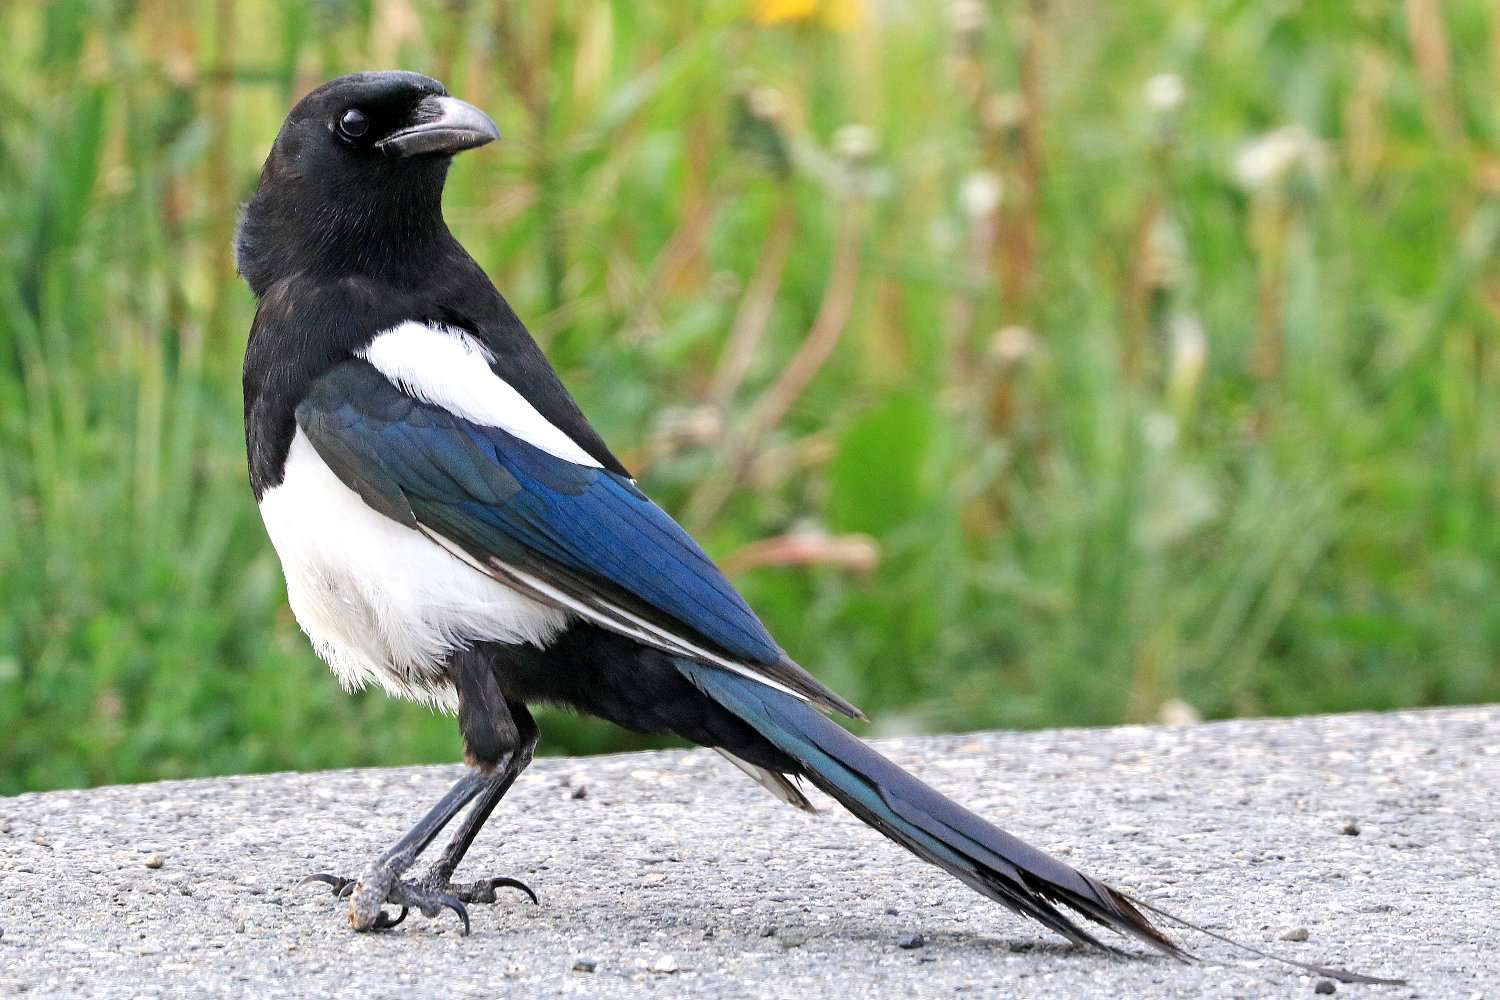 Black-Billed Magpie